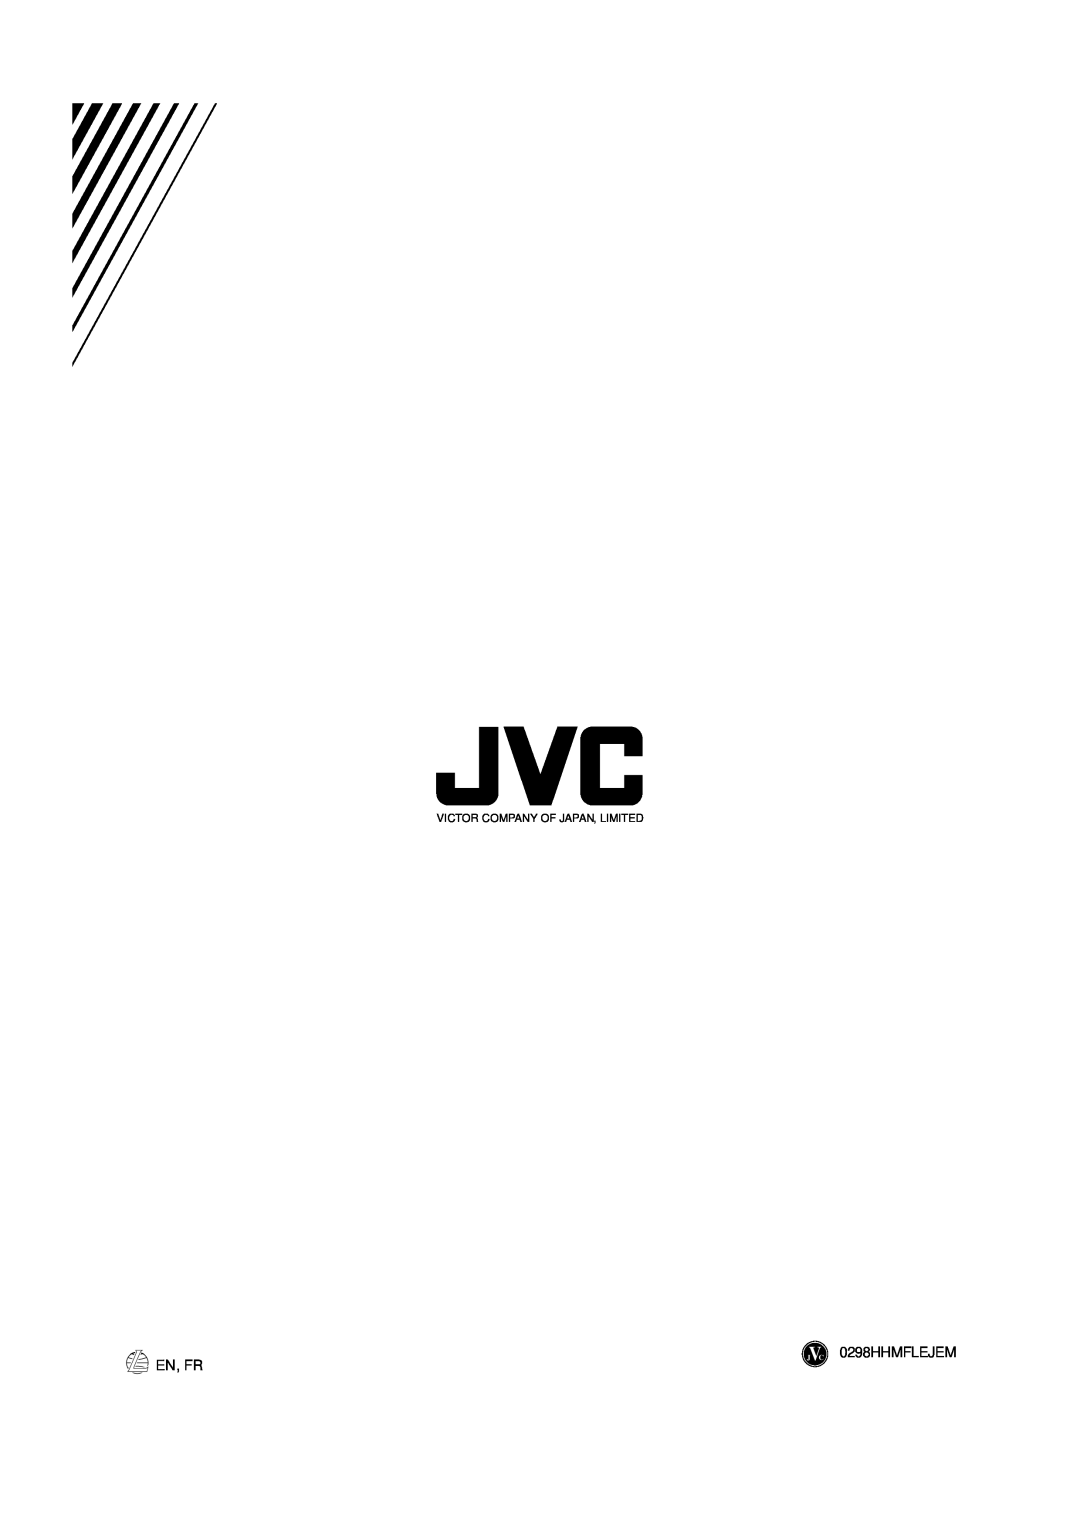 JVC GVT0001-002A manual En, Fr, JVC 0298HHMFLEJEM, Victor Company Of Japan, Limited 